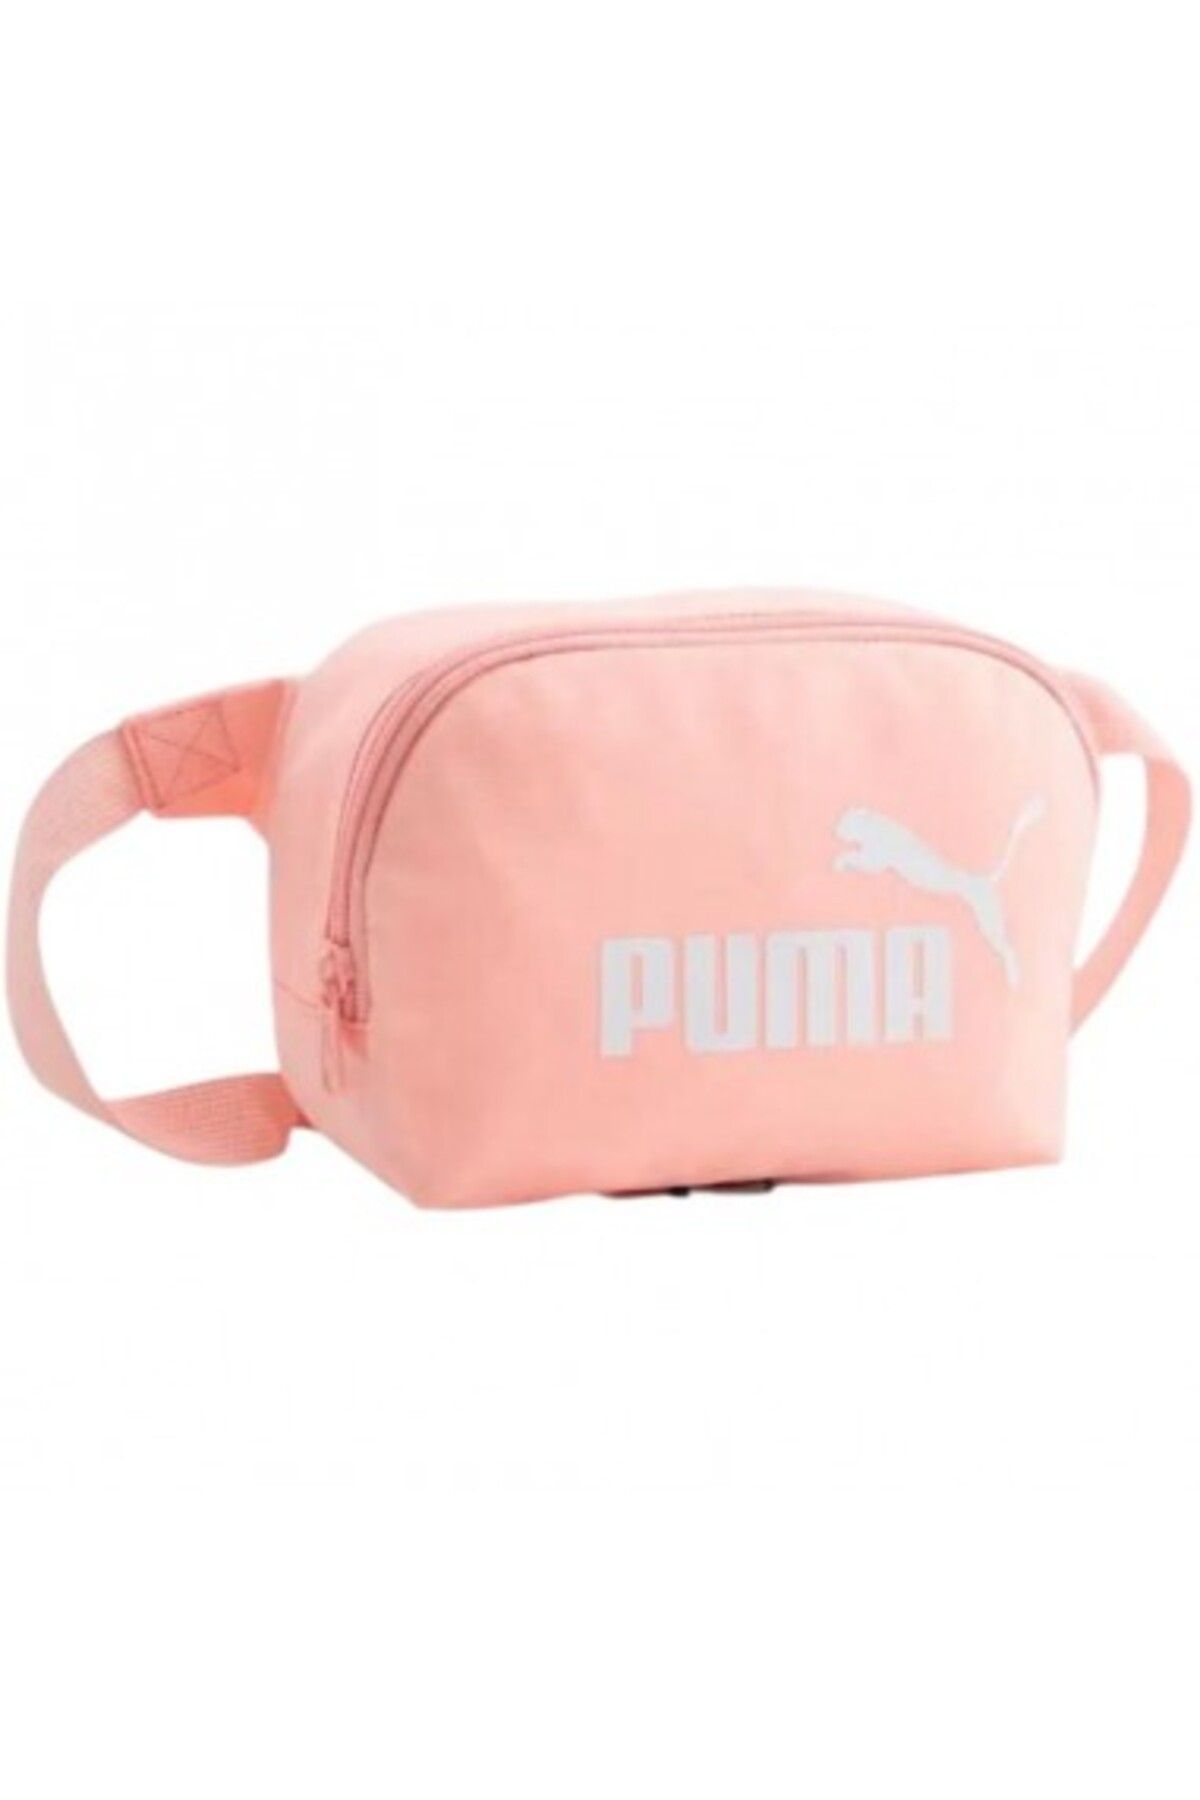 Puma Phase Waist Bag07995411